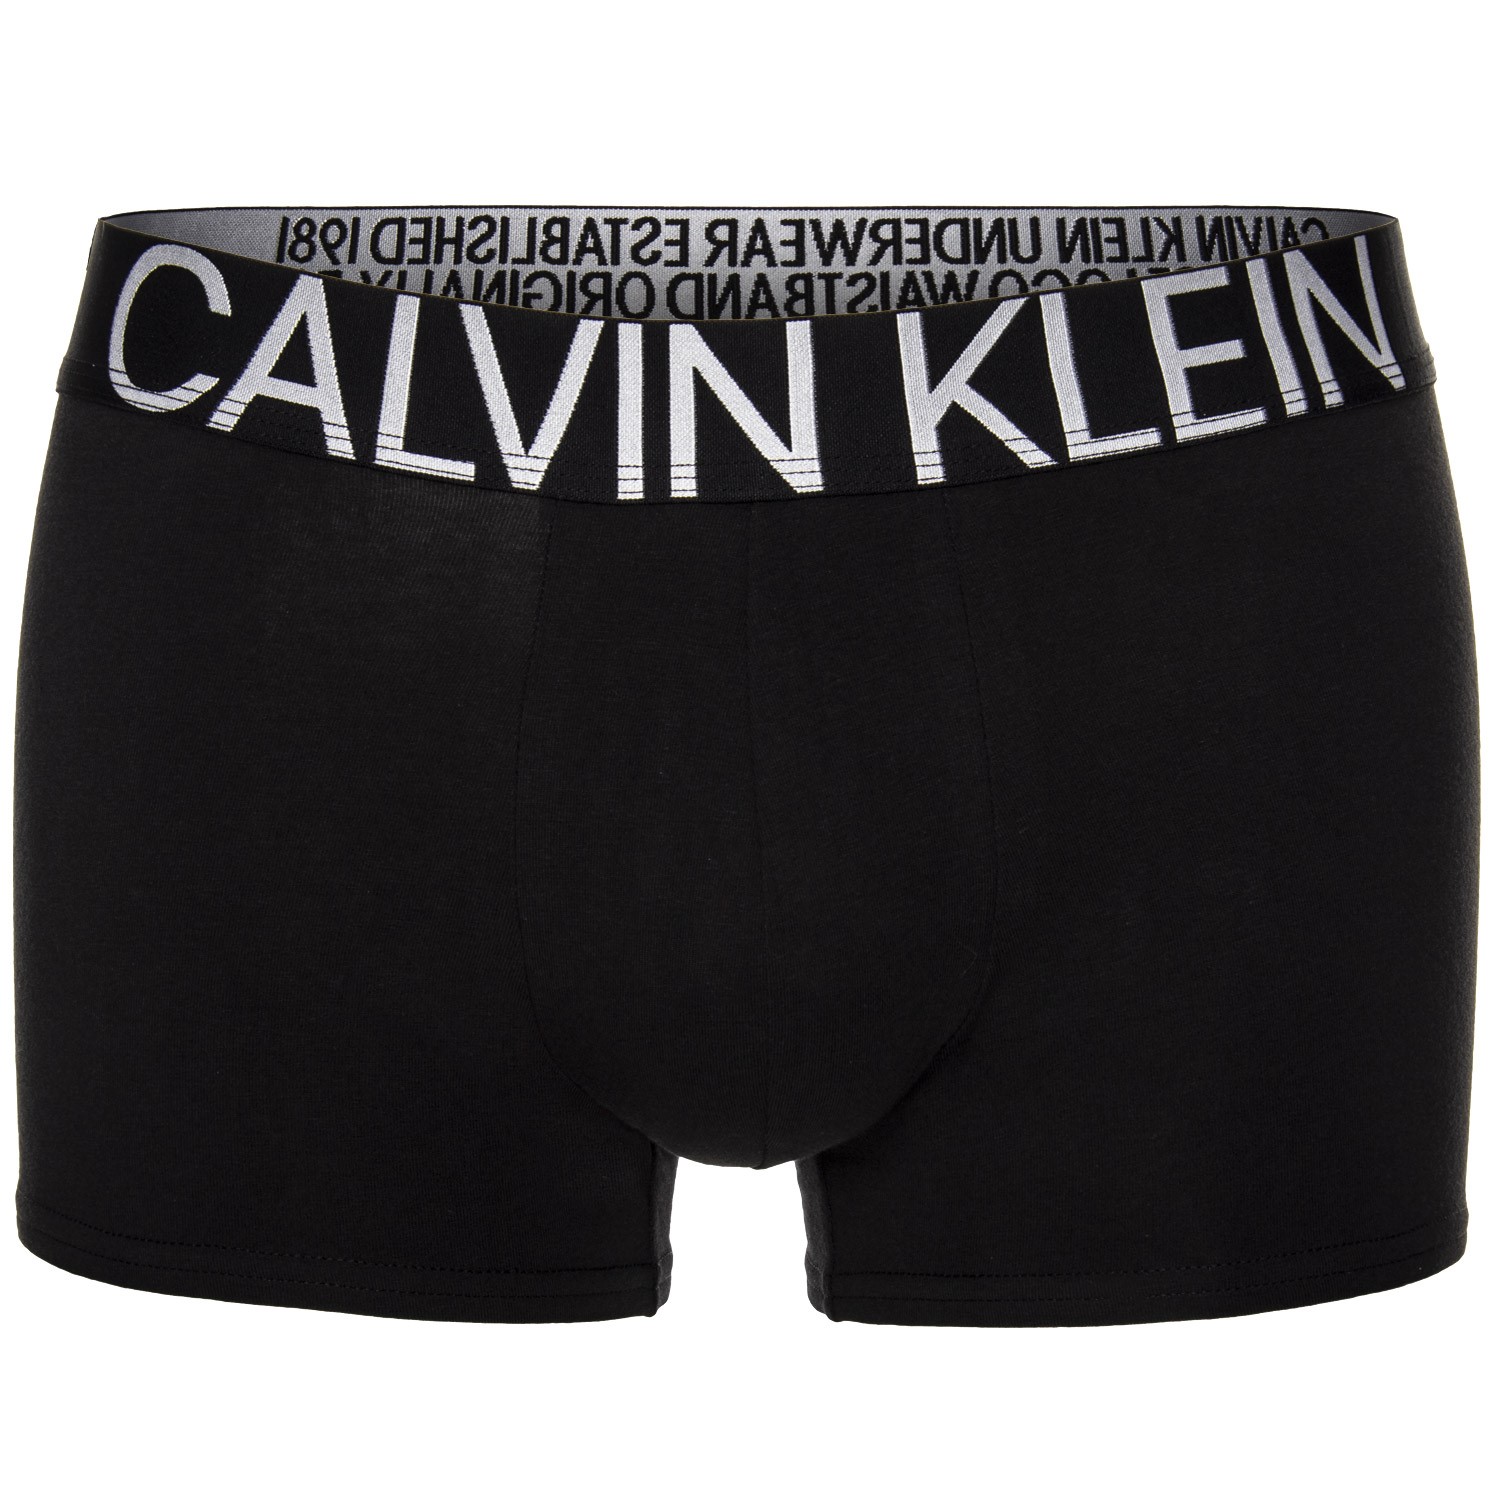 Calvin Klein Statement 1981 Cotton Trunk - Boxer - Trunks - Underwear ...